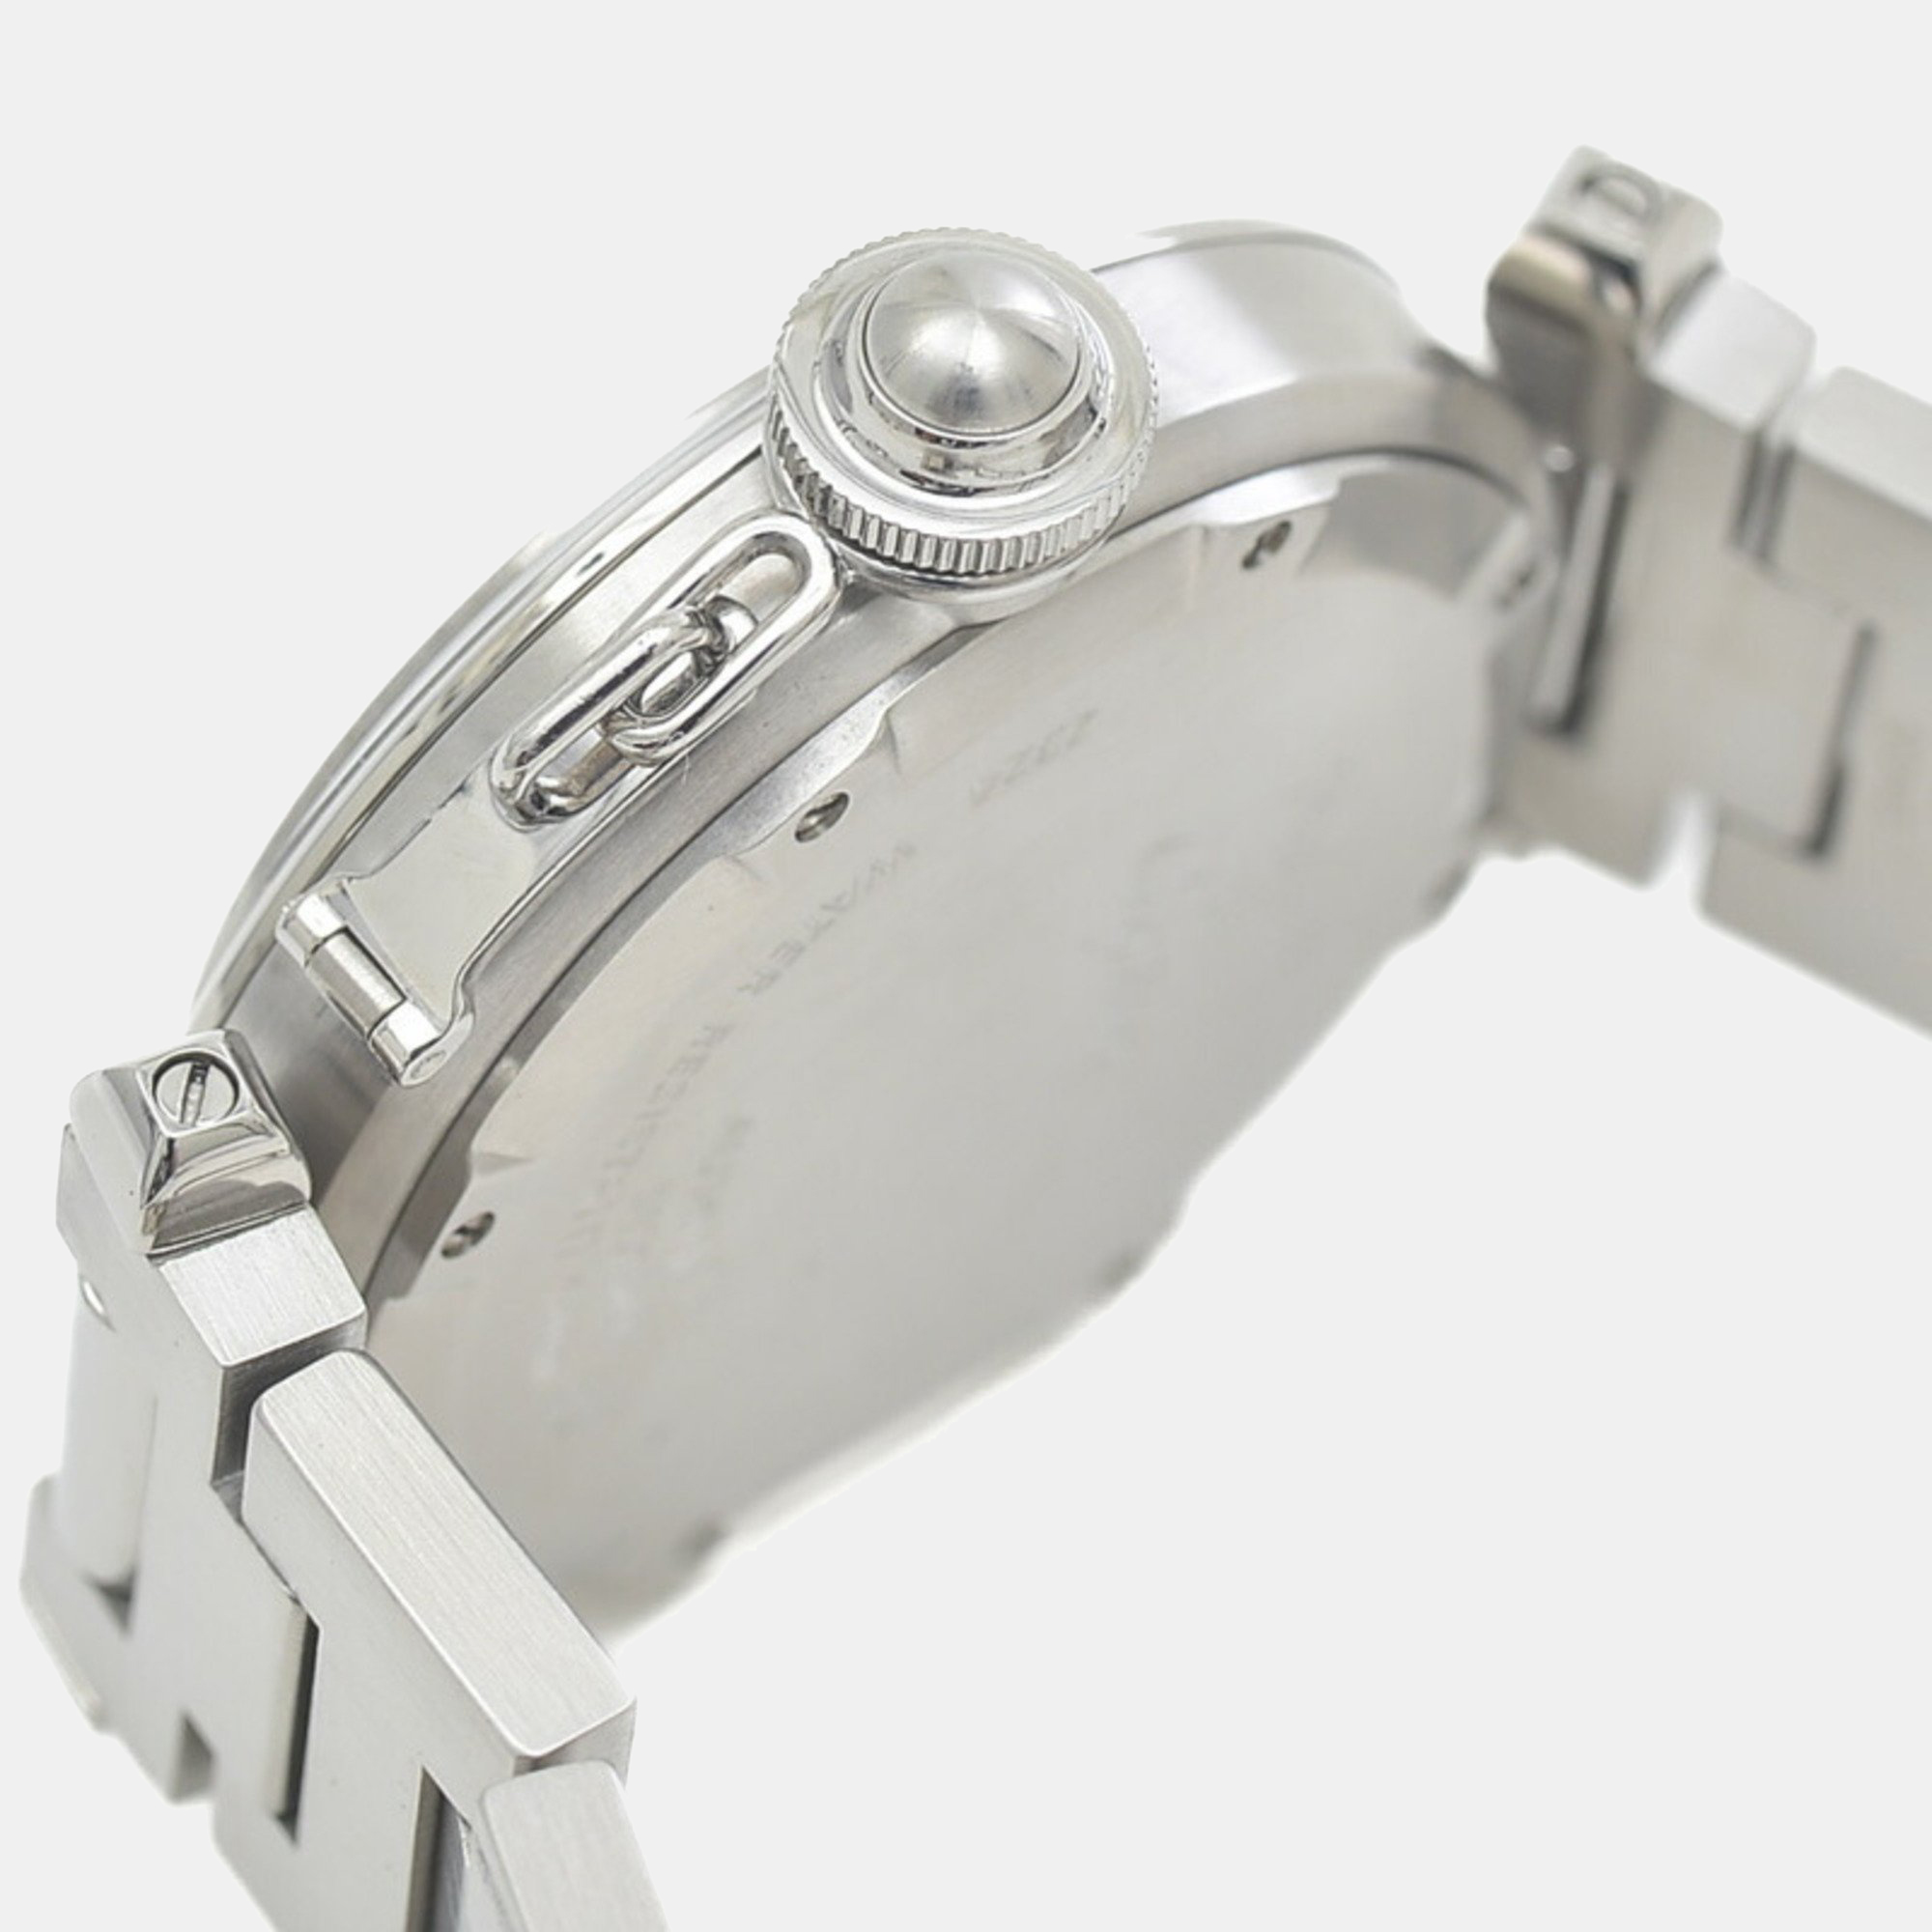 Cartier White Stainless Steel Pasha C De Cartier W31074M7 Automatic Men's Wristwatch 35 Mm